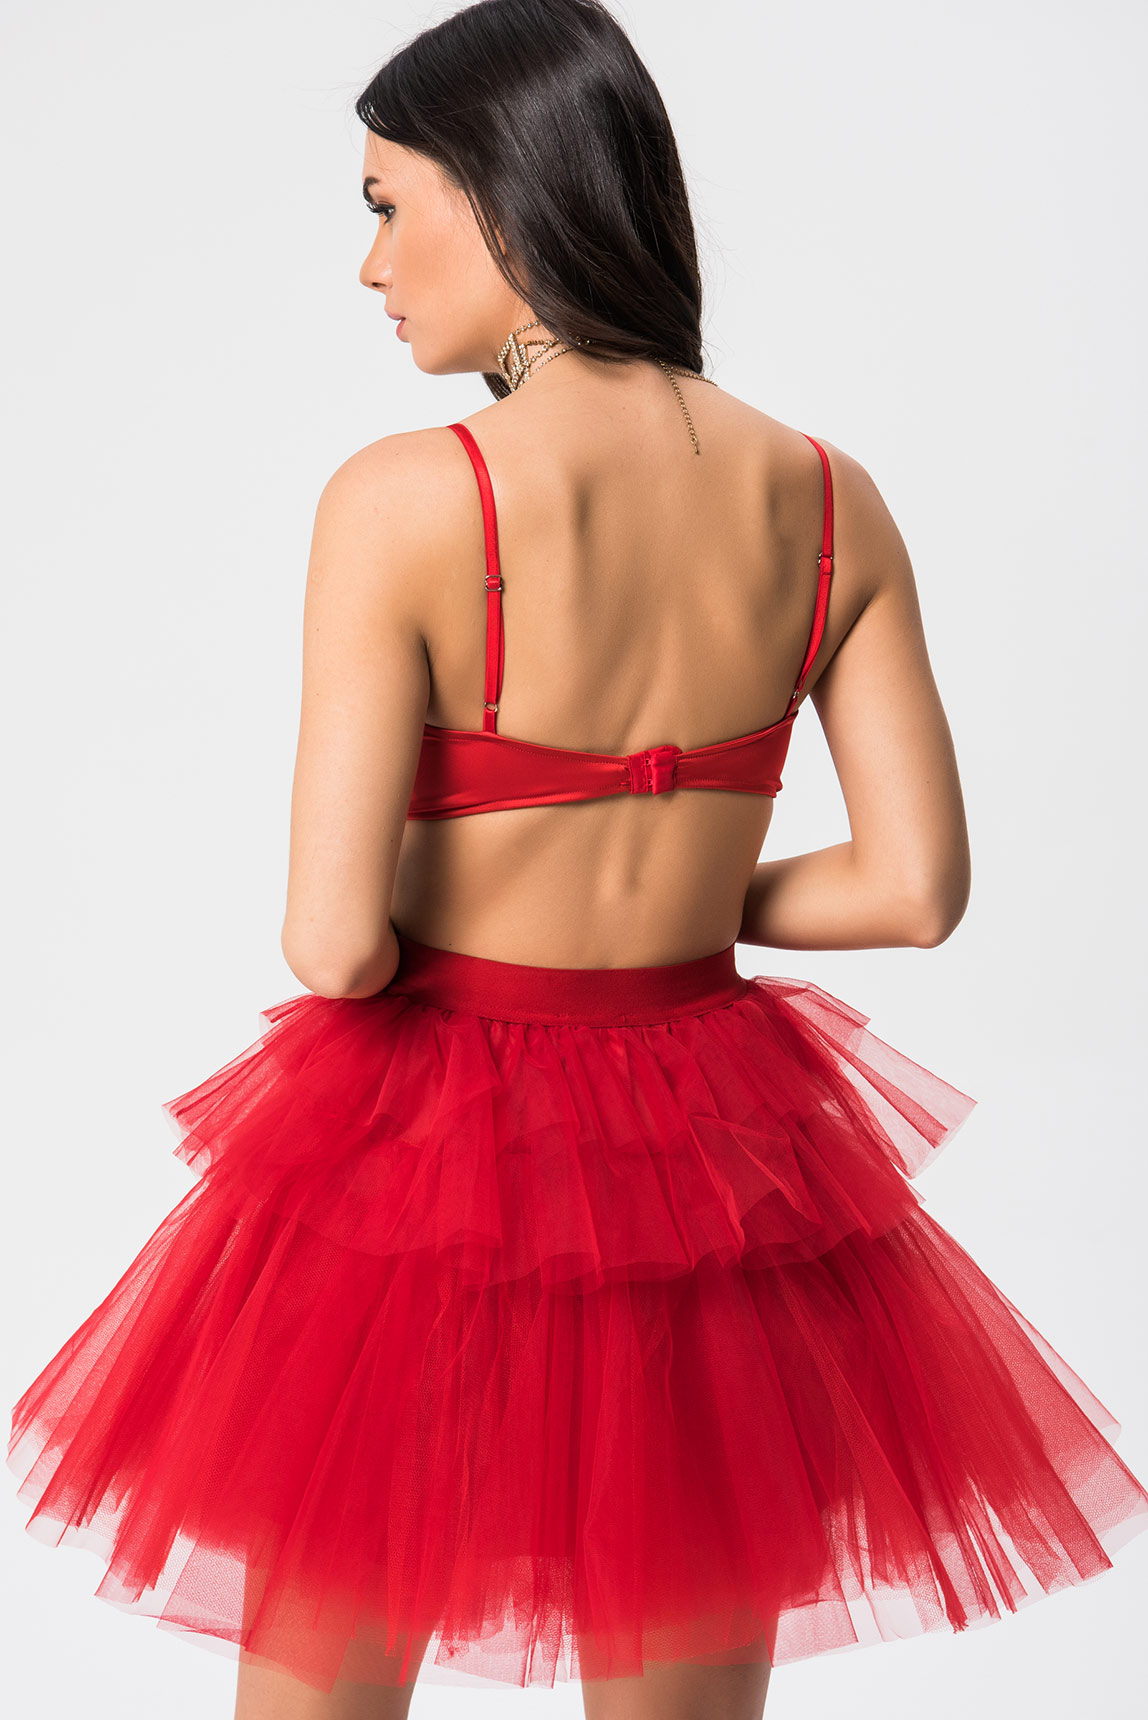 Wholesale Red Mini Tutu Skirt